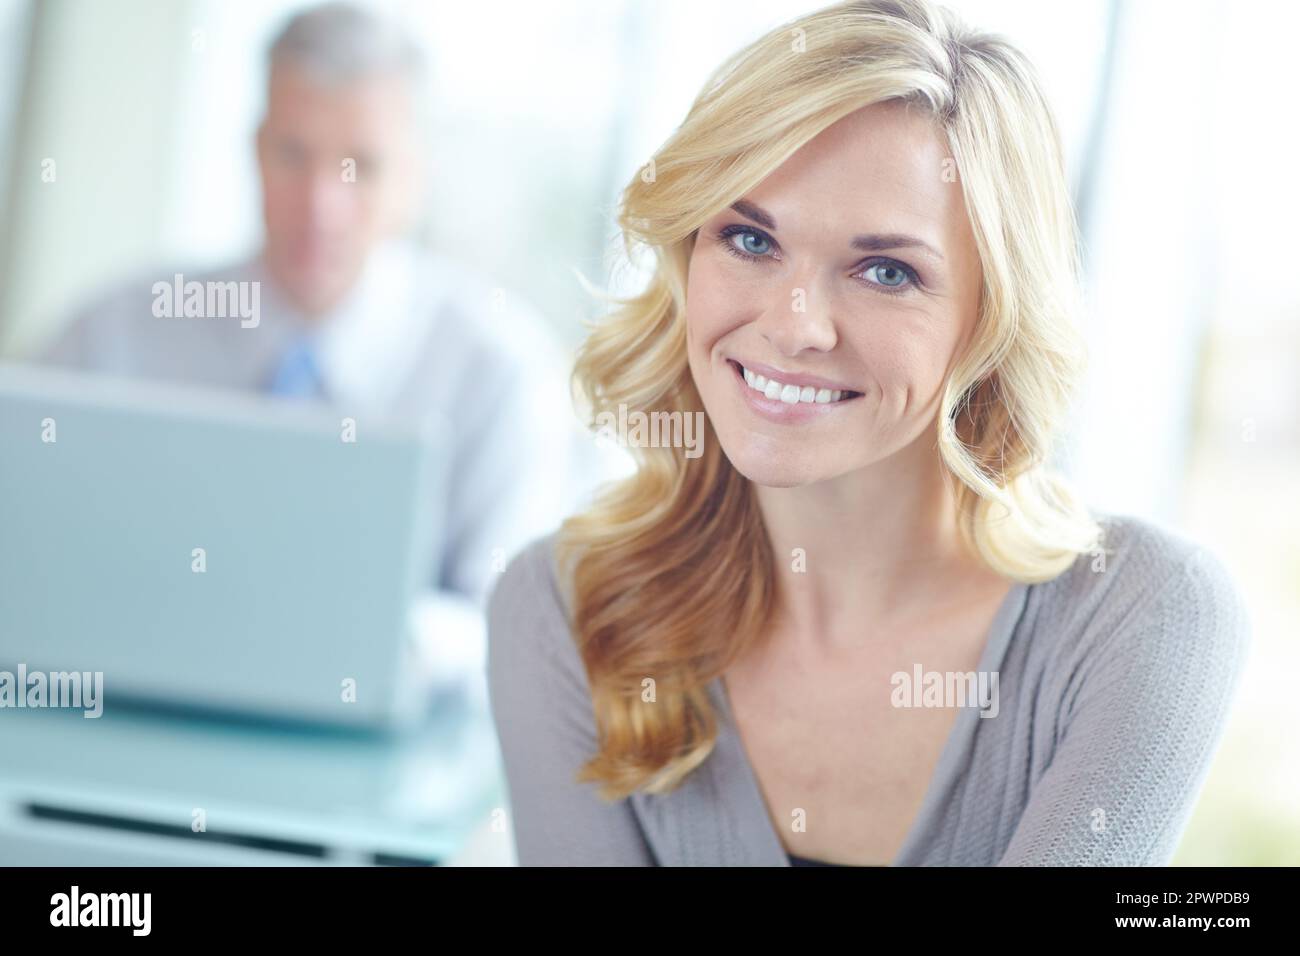 Elle est passionnée par sa carrière. Portrait court d'une femme d'affaires blonde attrayante avec un collègue en arrière-plan. Banque D'Images